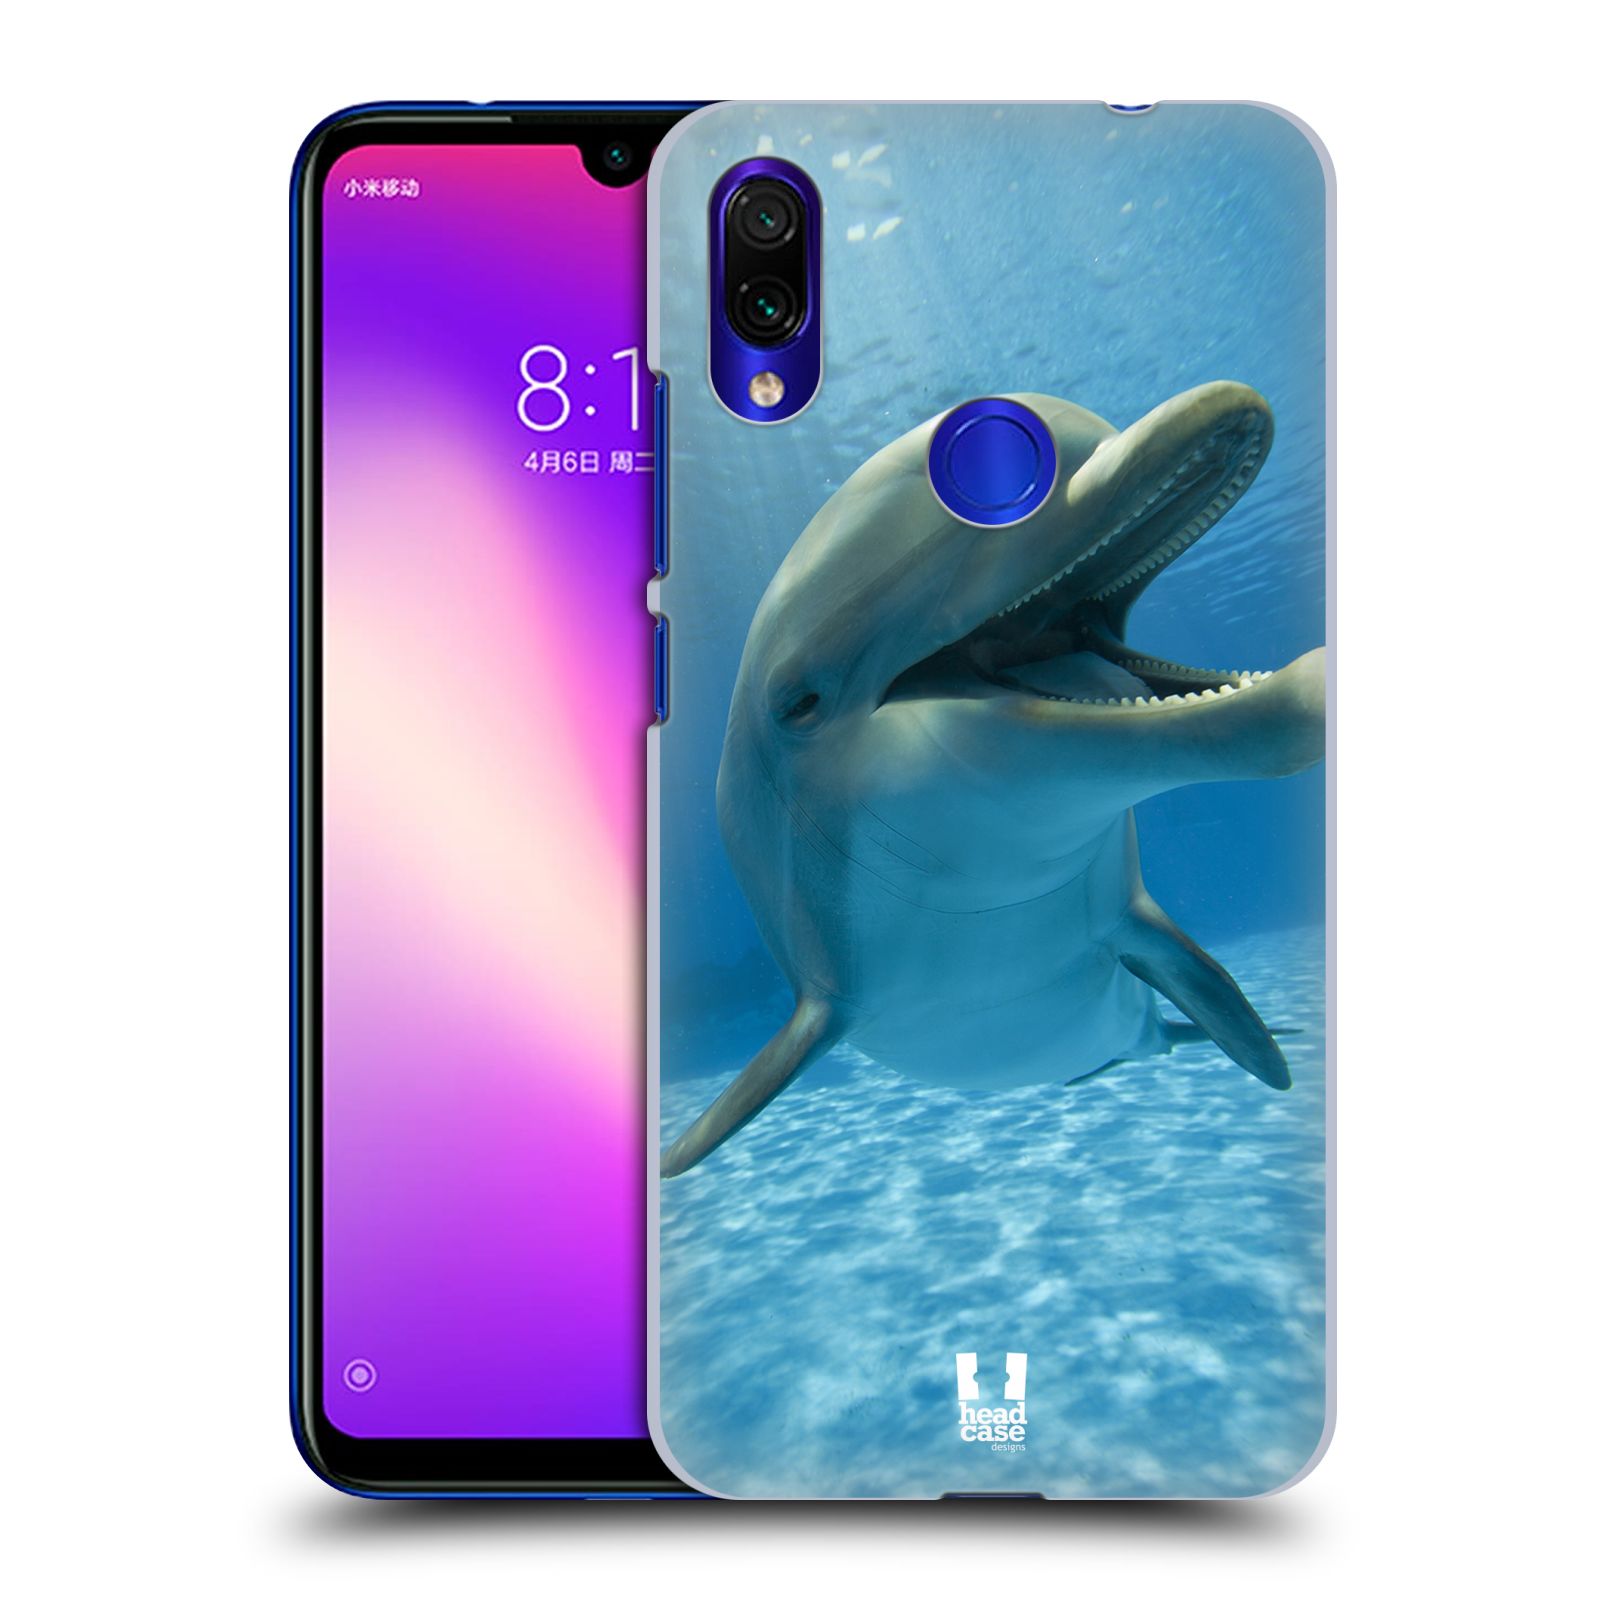 Zadní obal pro mobil Xiaomi Redmi Note 7 / 7 Pro - HEAD CASE - Svět zvířat delfín v moři